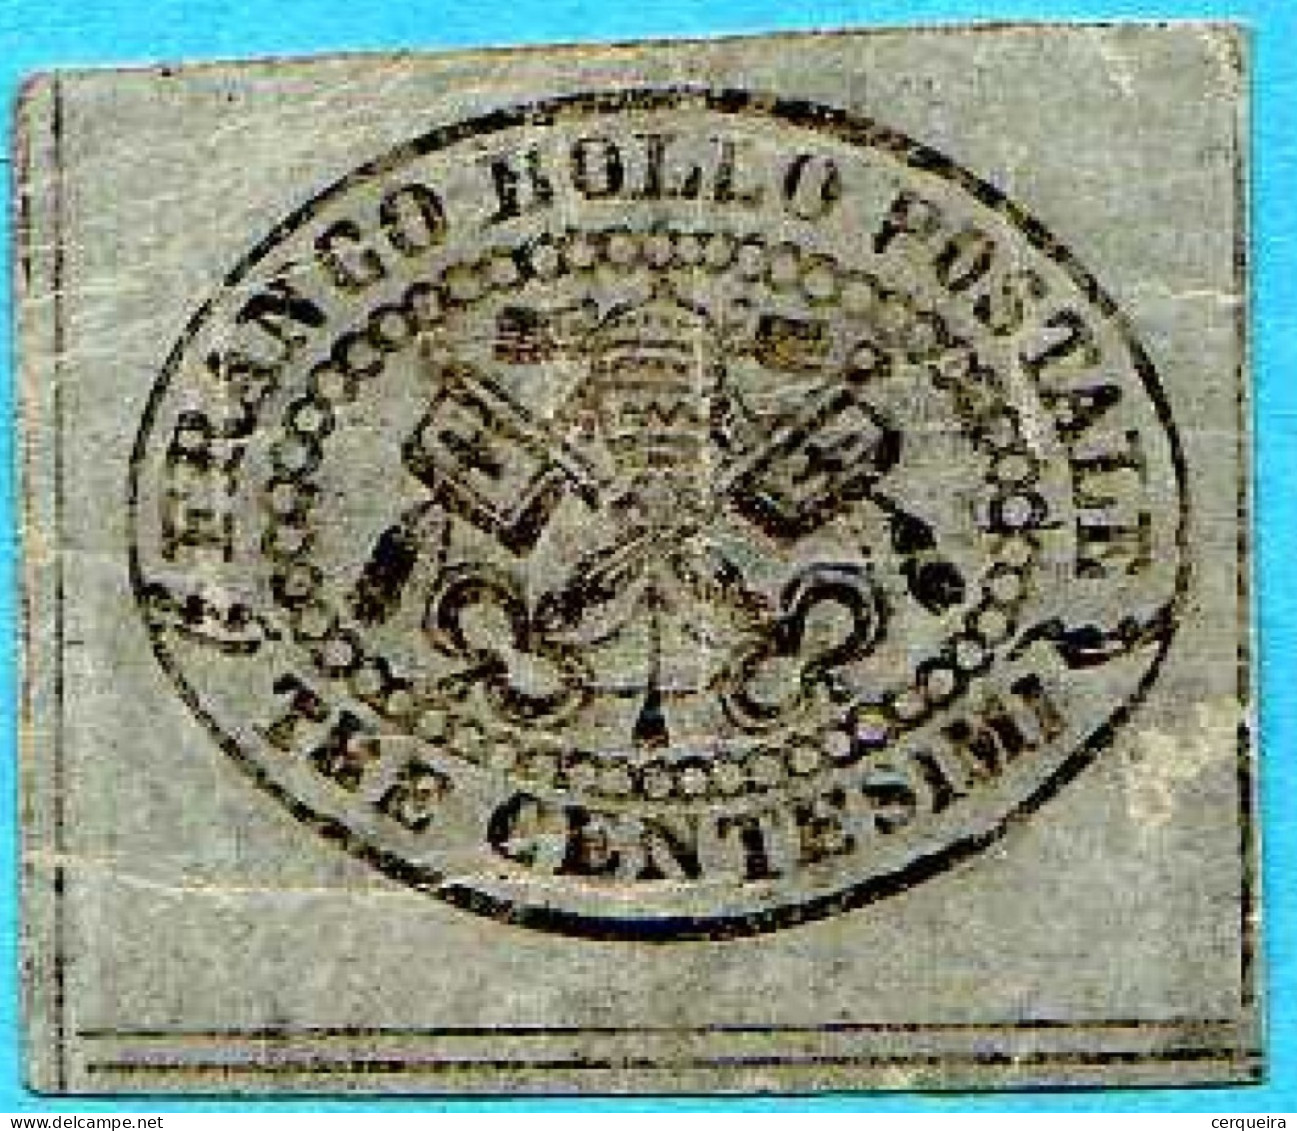 Selo Dos Estados Romanos Italianos, 1867,  Perfeito Estado, - 1. ...-1850 Prephilately